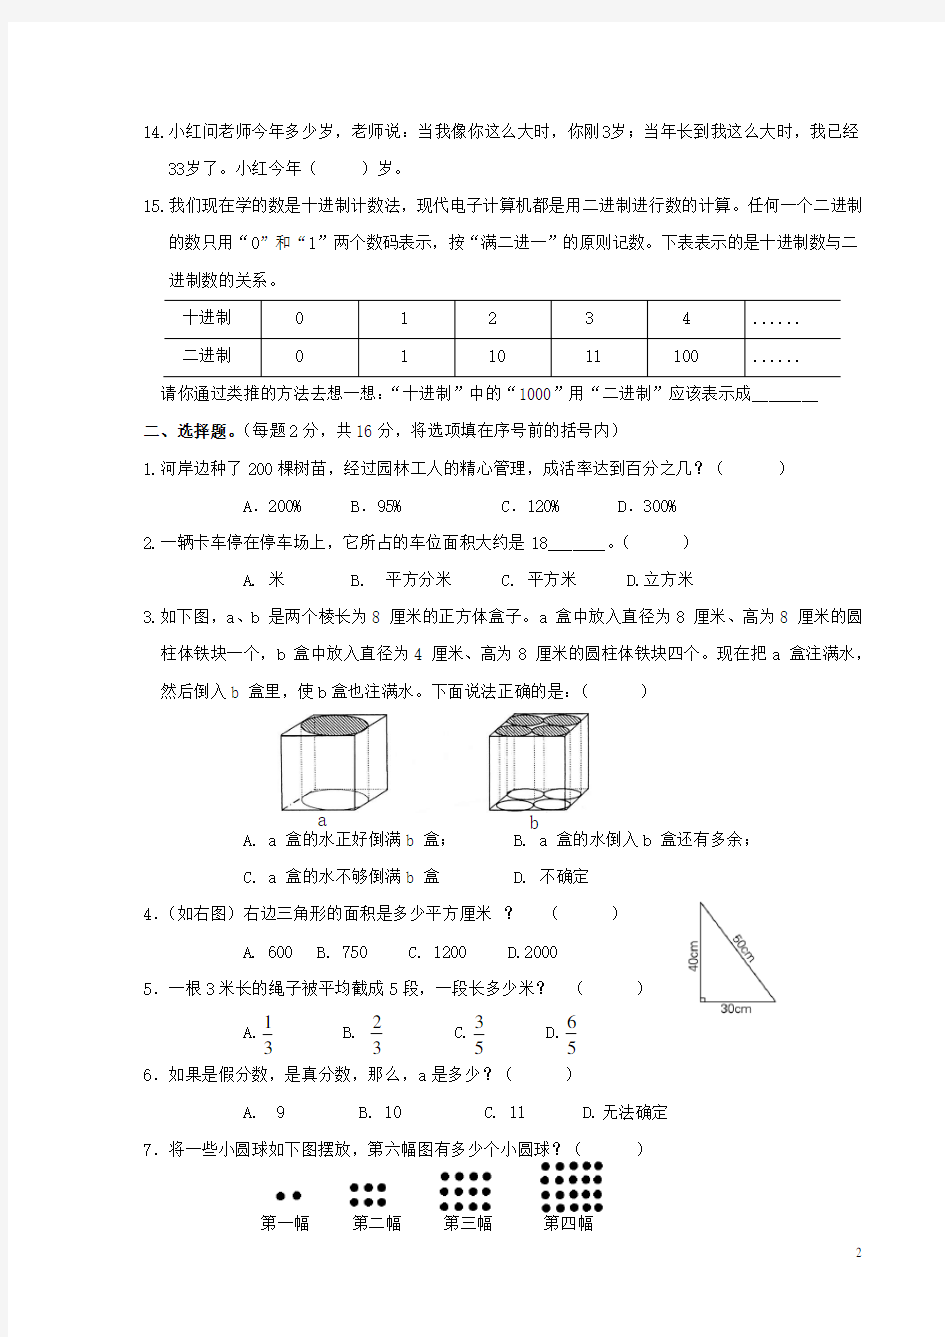 2016南京新初一分班考试数学试卷5